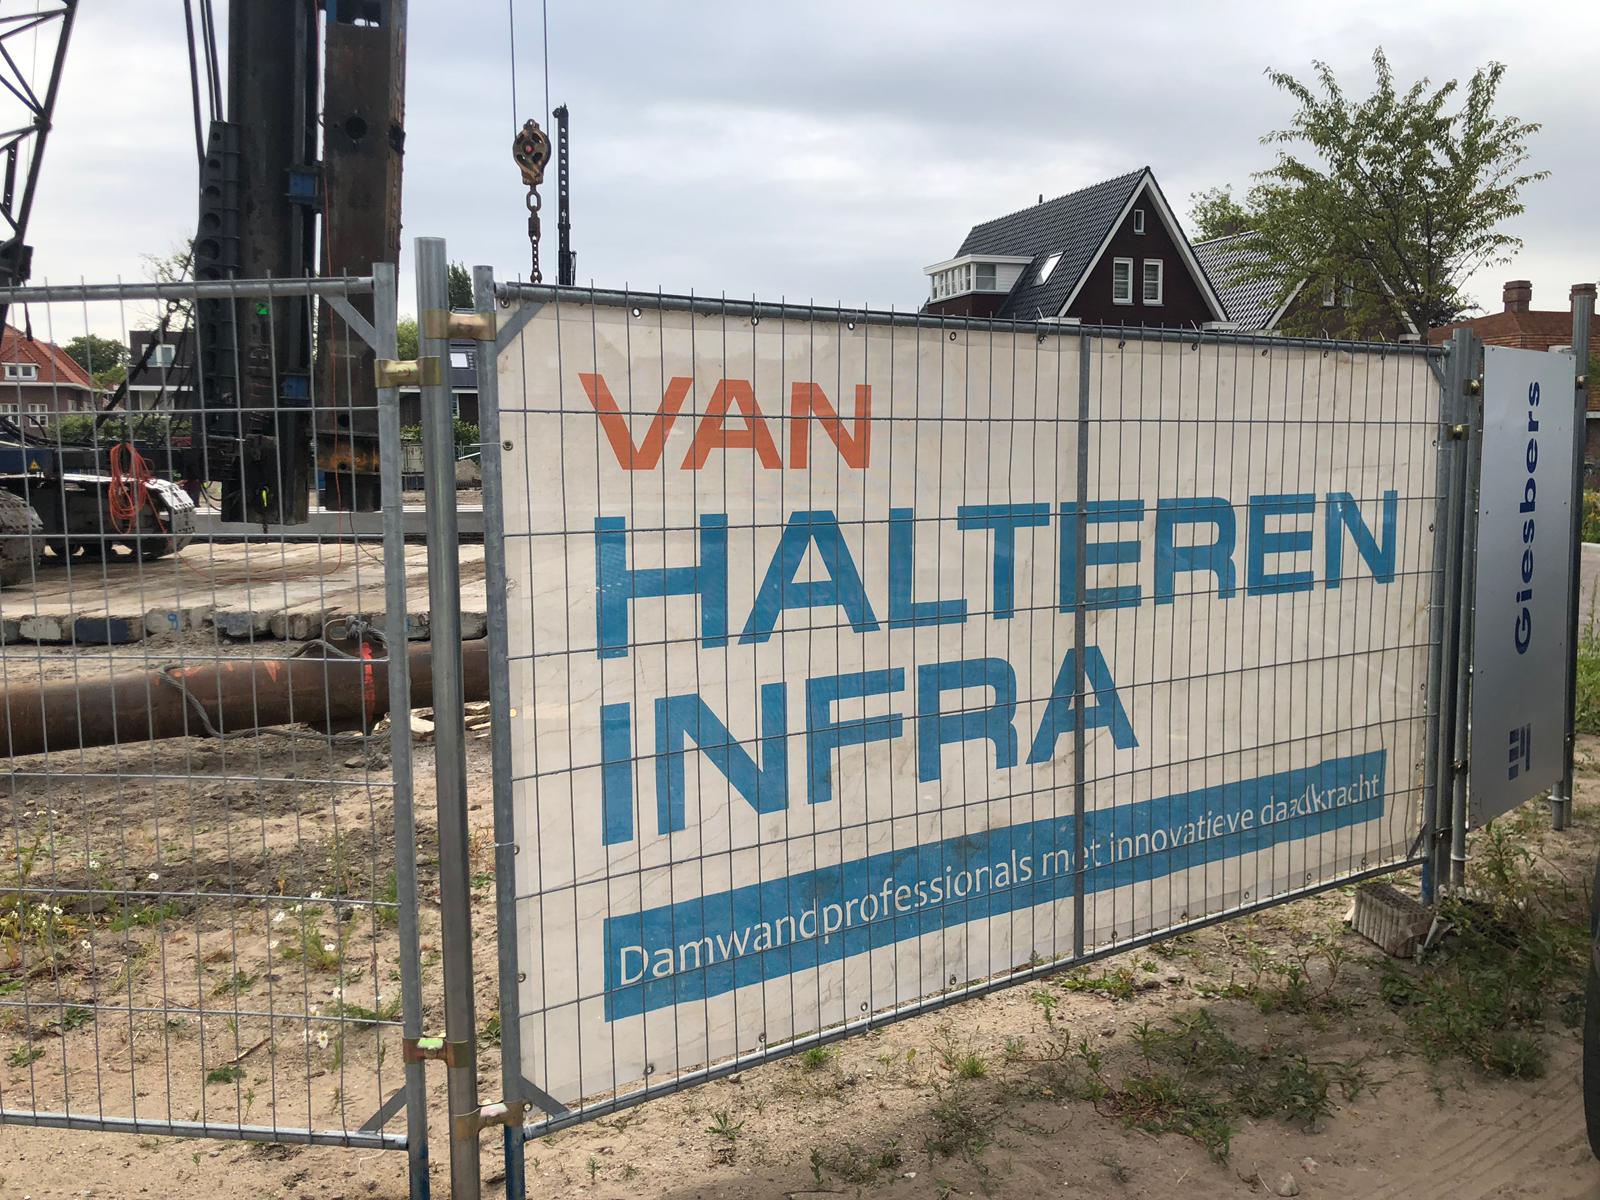 Van Halteren Infra actief bij bouw Residence Schiedam met aanbrengen betonnen funderingspalen.